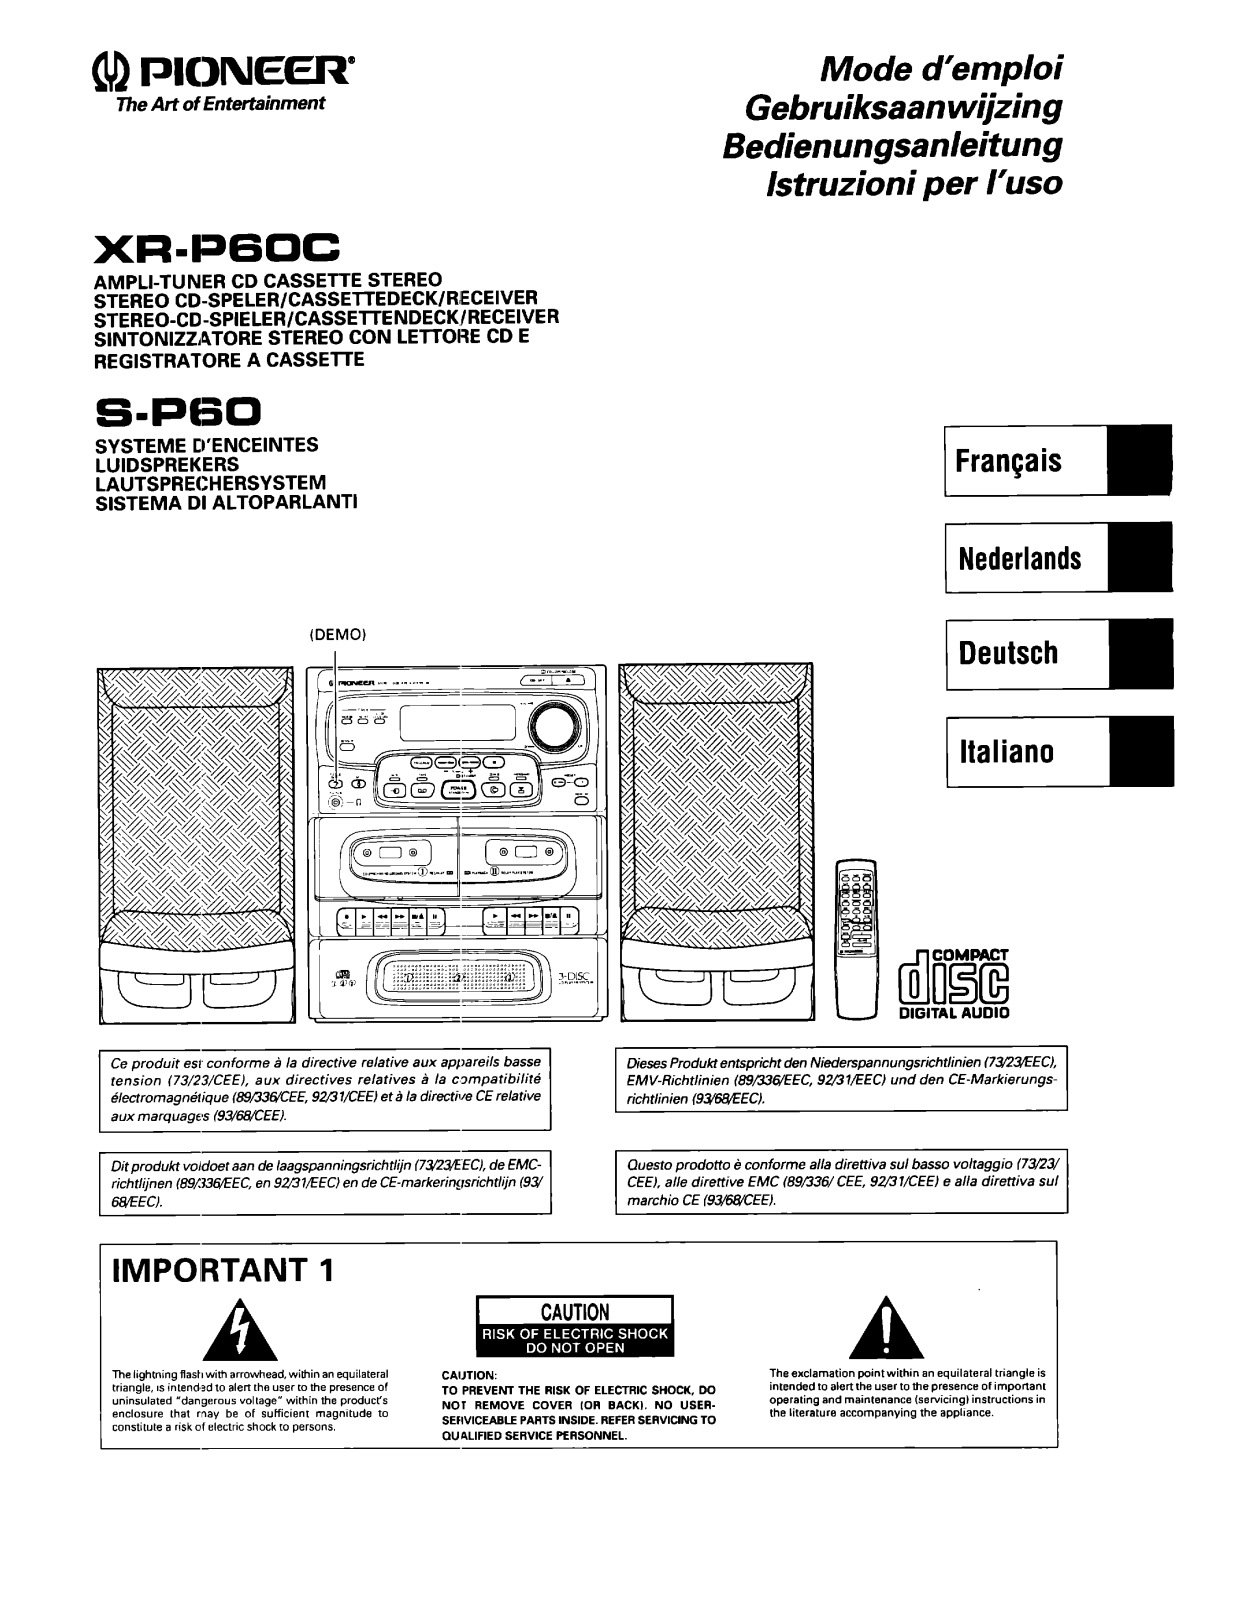 Pioneer XR-P60C Manual